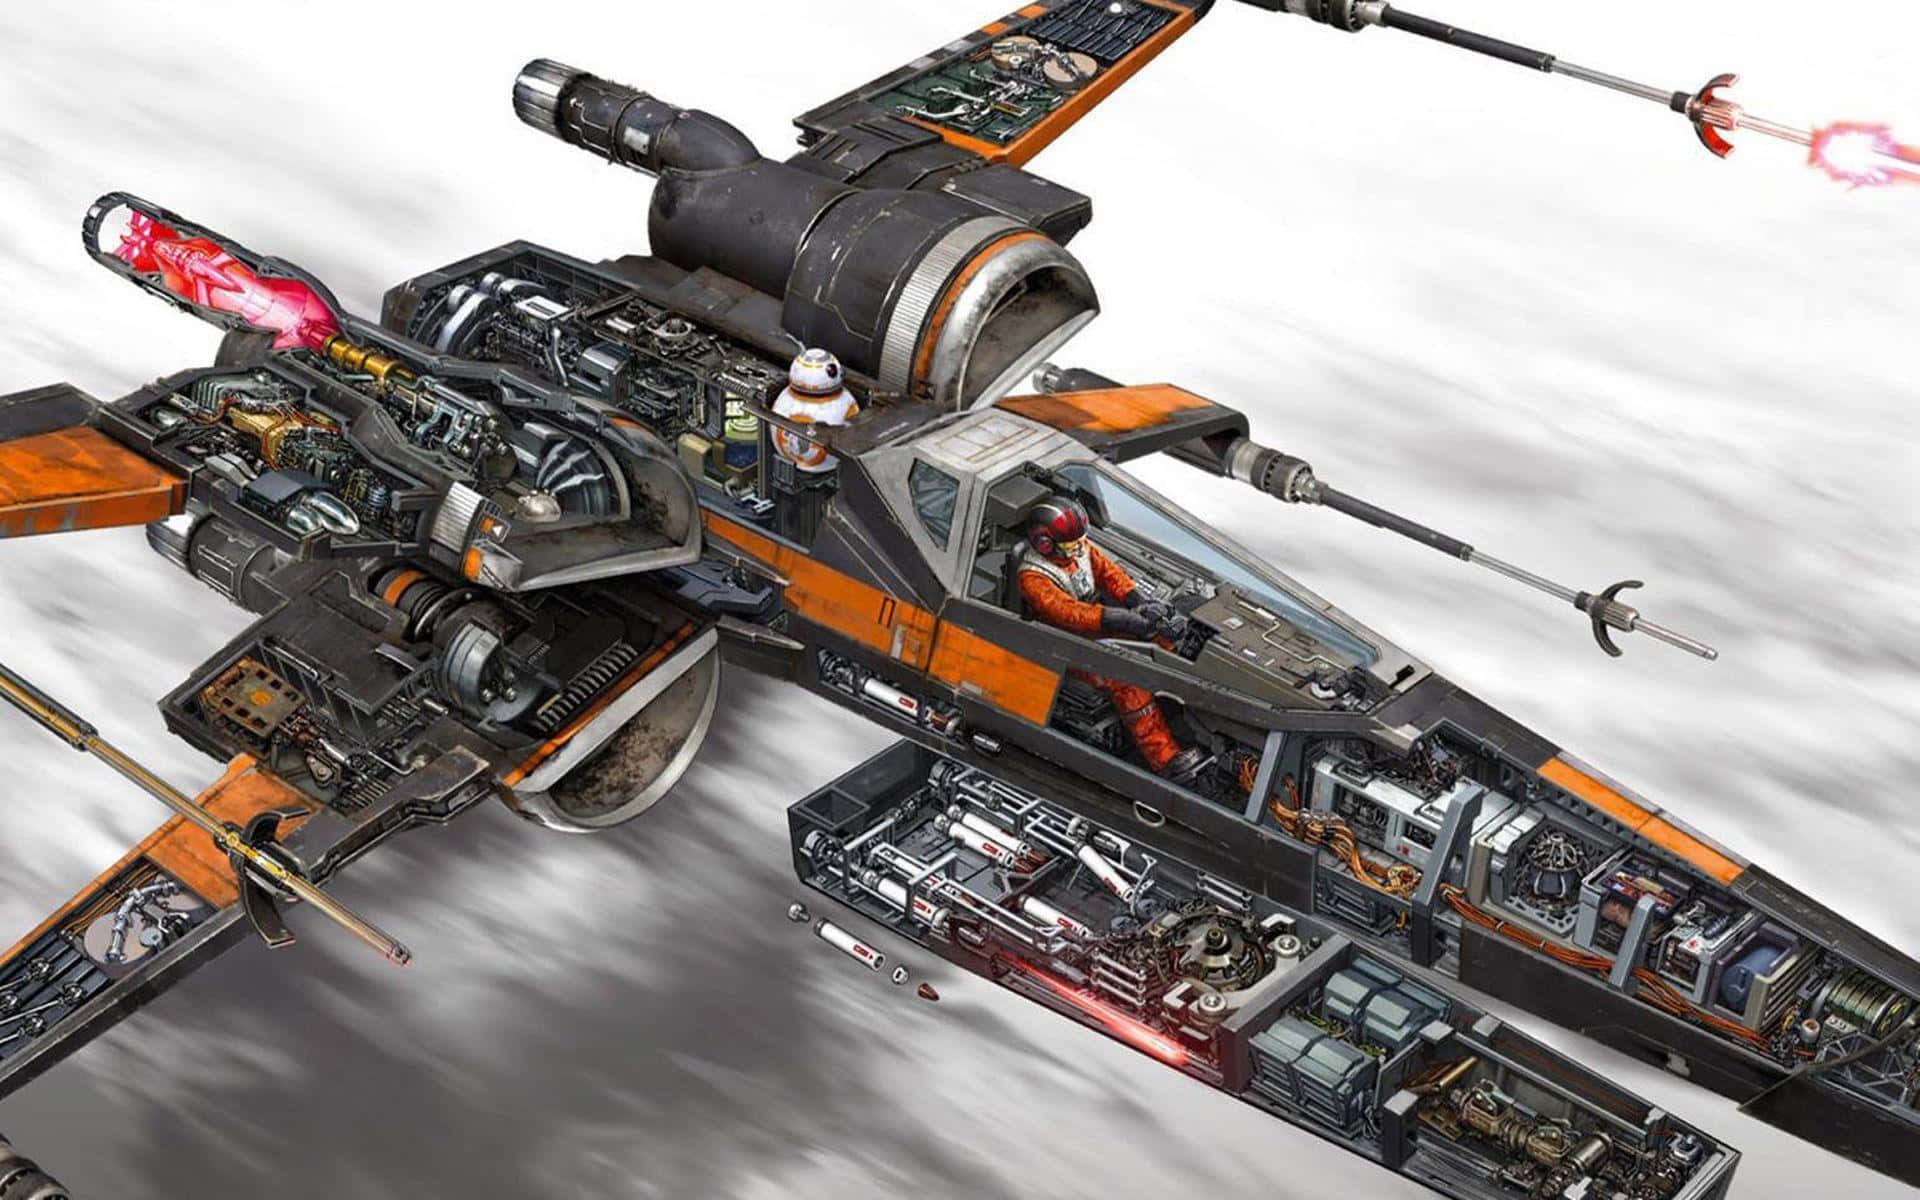 Denbösen Mächten In Der Epischen Star Wars X-wing Weltraumschlacht Entgegentreten. Wallpaper